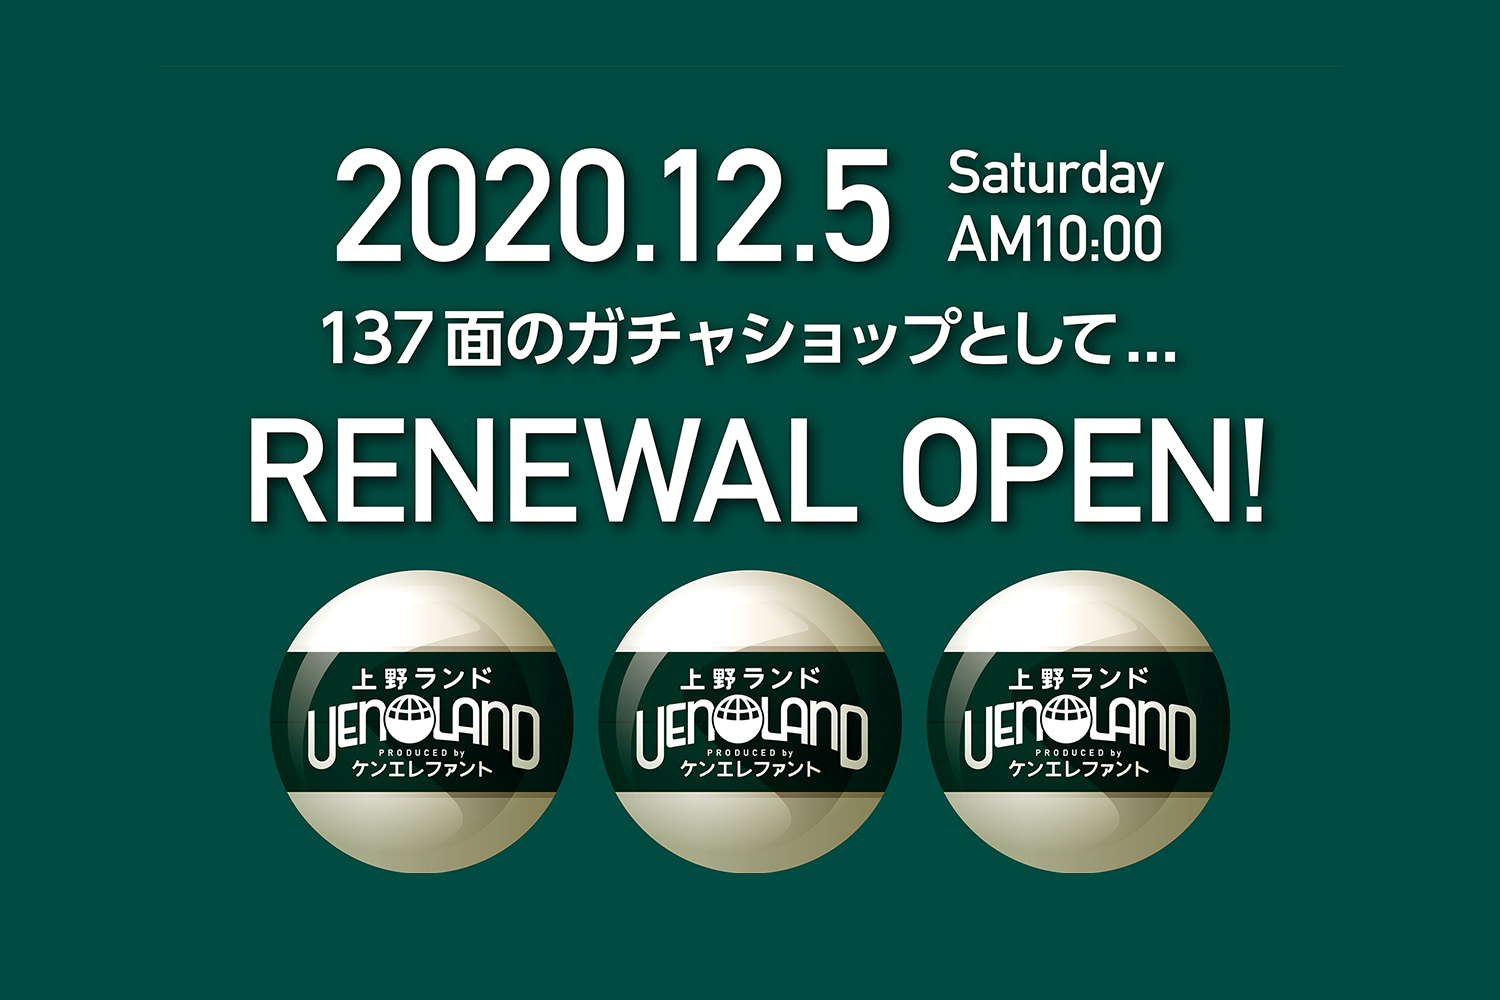 上野ランド 12 5 土 にリニューアルオープンいたします Kenelephant ケンエレファント フィギュアメーカー